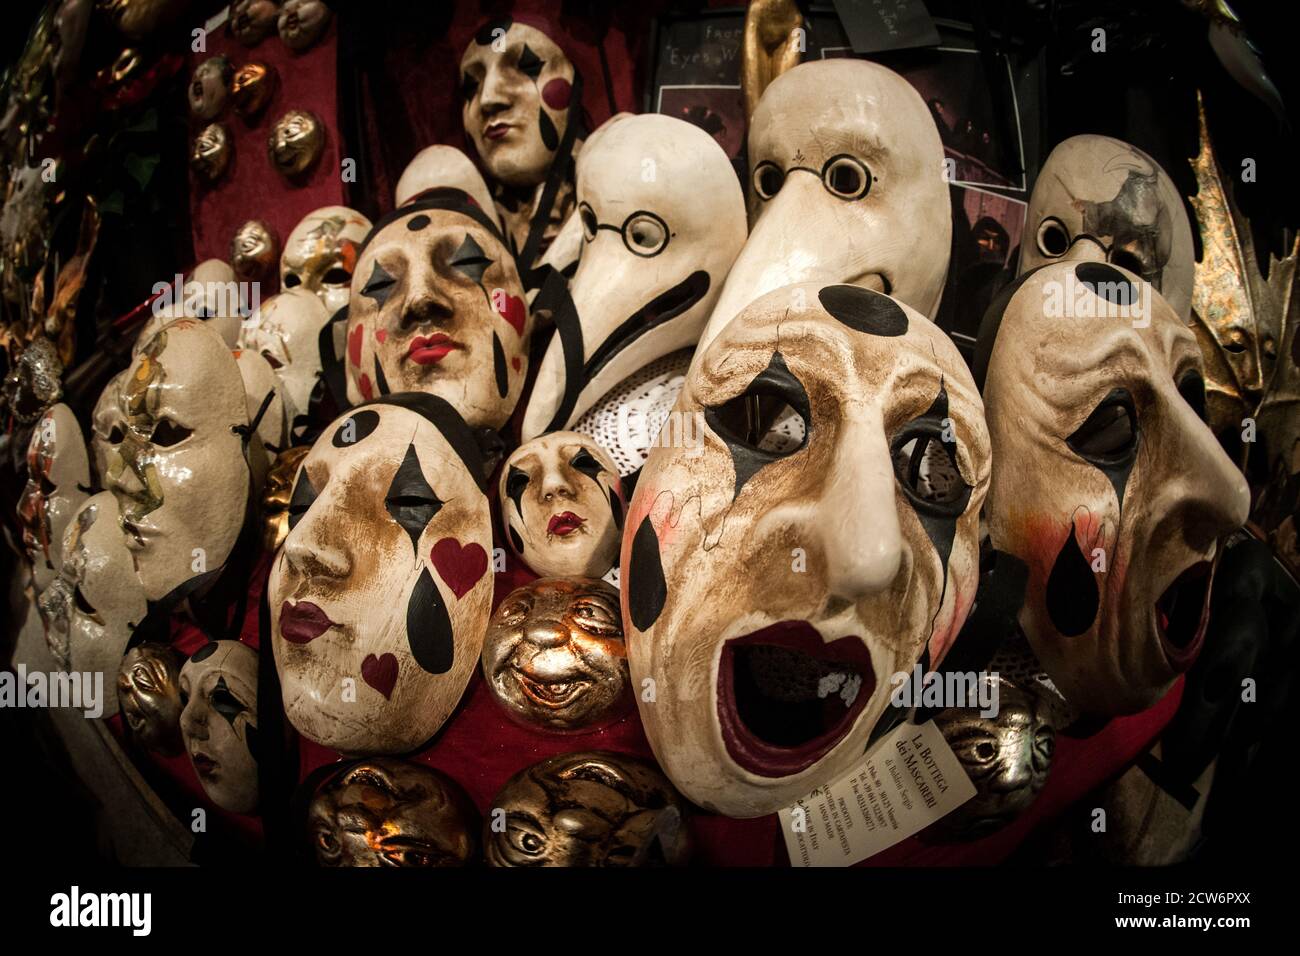 Une série classique de masques dans une boutique d'artisans. Banque D'Images